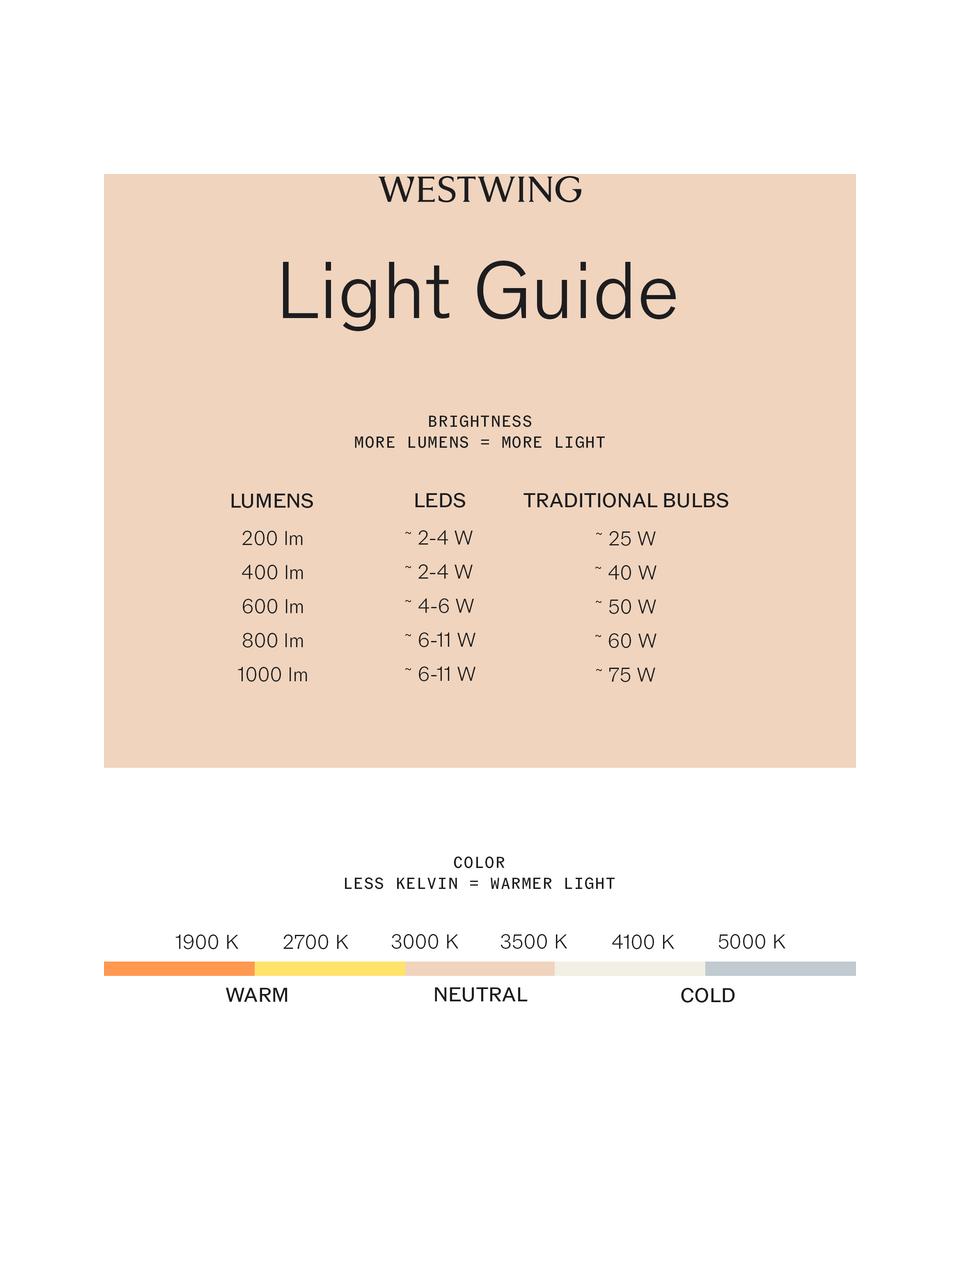 Décoration lumineuse LED Winston Rabbit, 100 % silicone, Gris clair, Ø 11 x haut. 14 cm